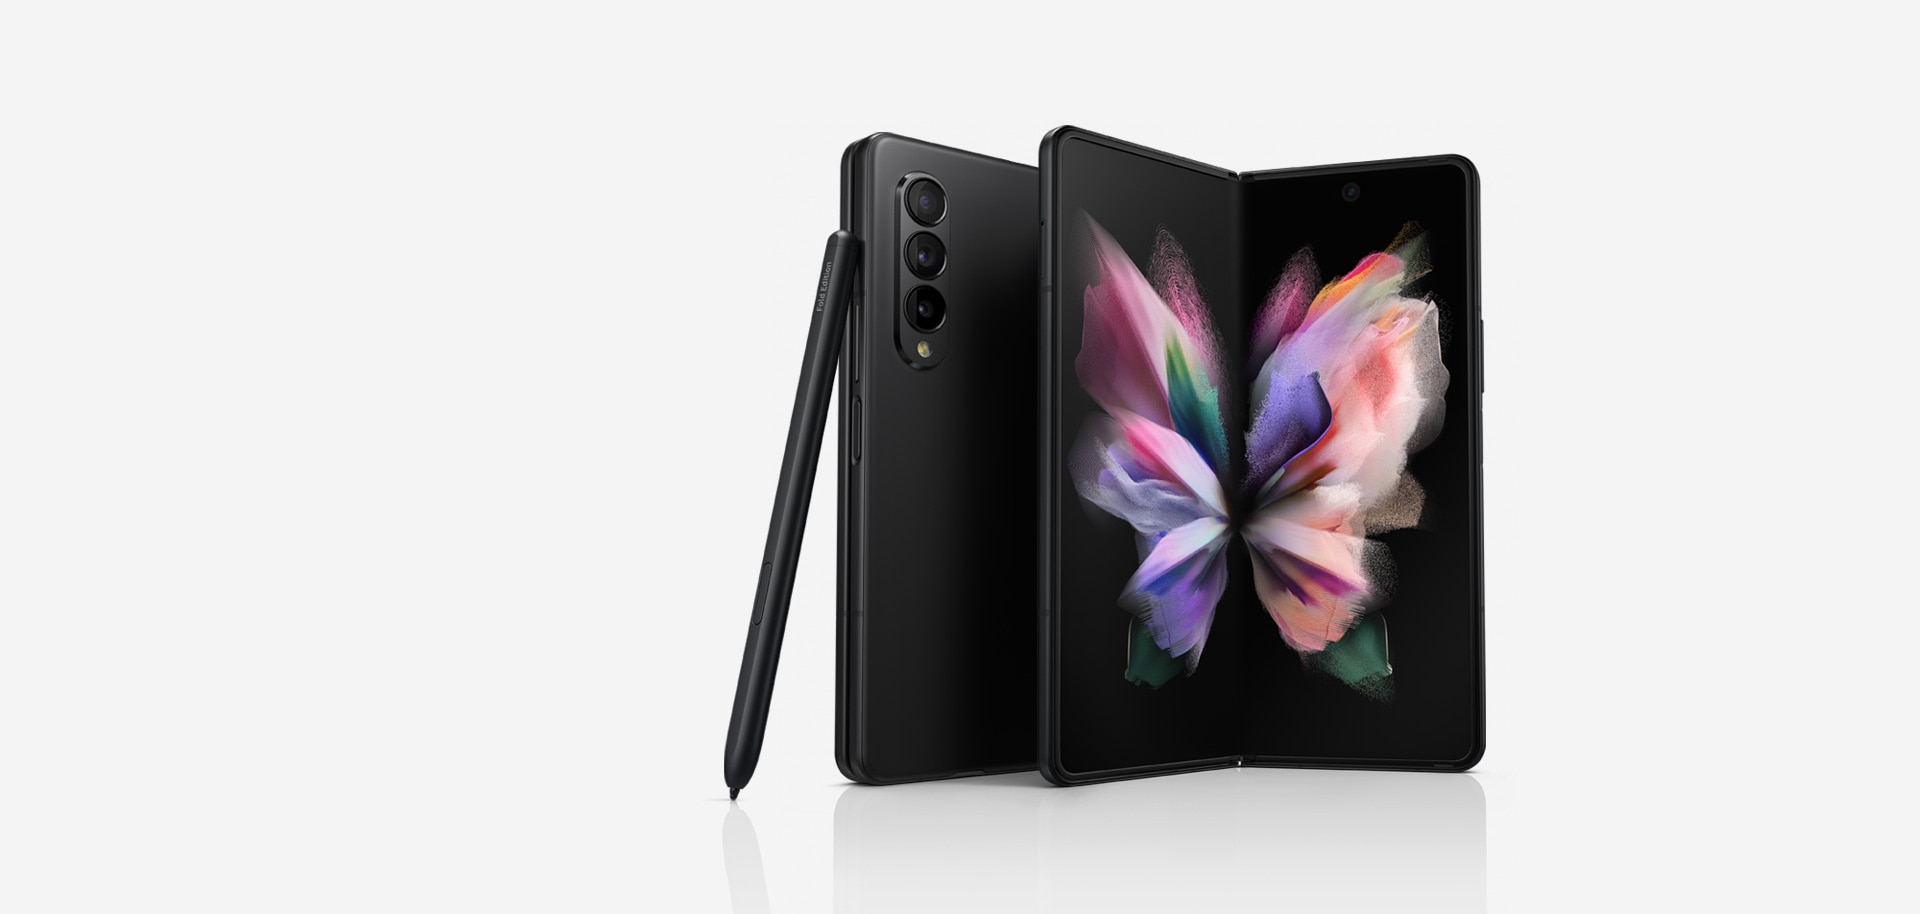 Hãy cập nhật cho chiếc điện thoại Samsung Galaxy Z Fold2 của bạn với hình nền trong suốt đẹp mắt. Không chỉ mang đến vẻ đẹp thẩm mỹ mà nó còn giúp tôn lên sự sang trọng của thiết bị của bạn.